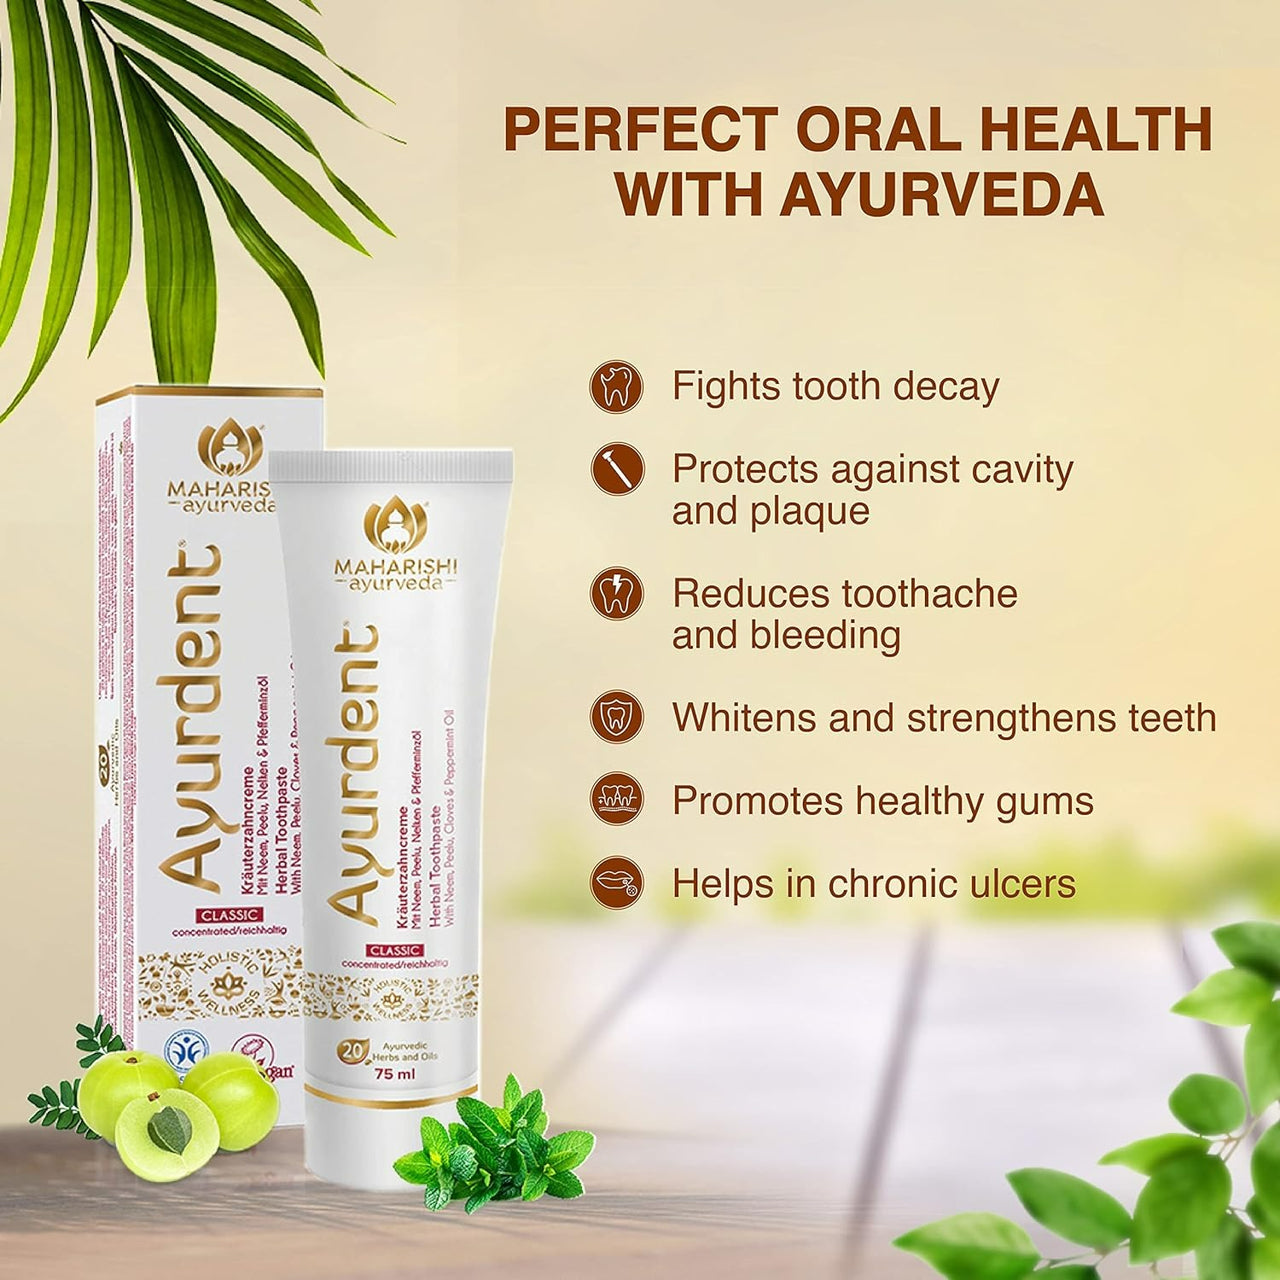 Maharishi Ayurveda Ayurdent Classic Toothpaste